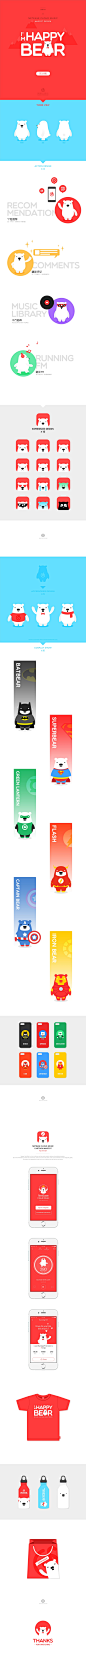 乐小熊 HAPPYBEAR - 网易云音乐卡通形象设计-UI中国-专业界面交互设计平台